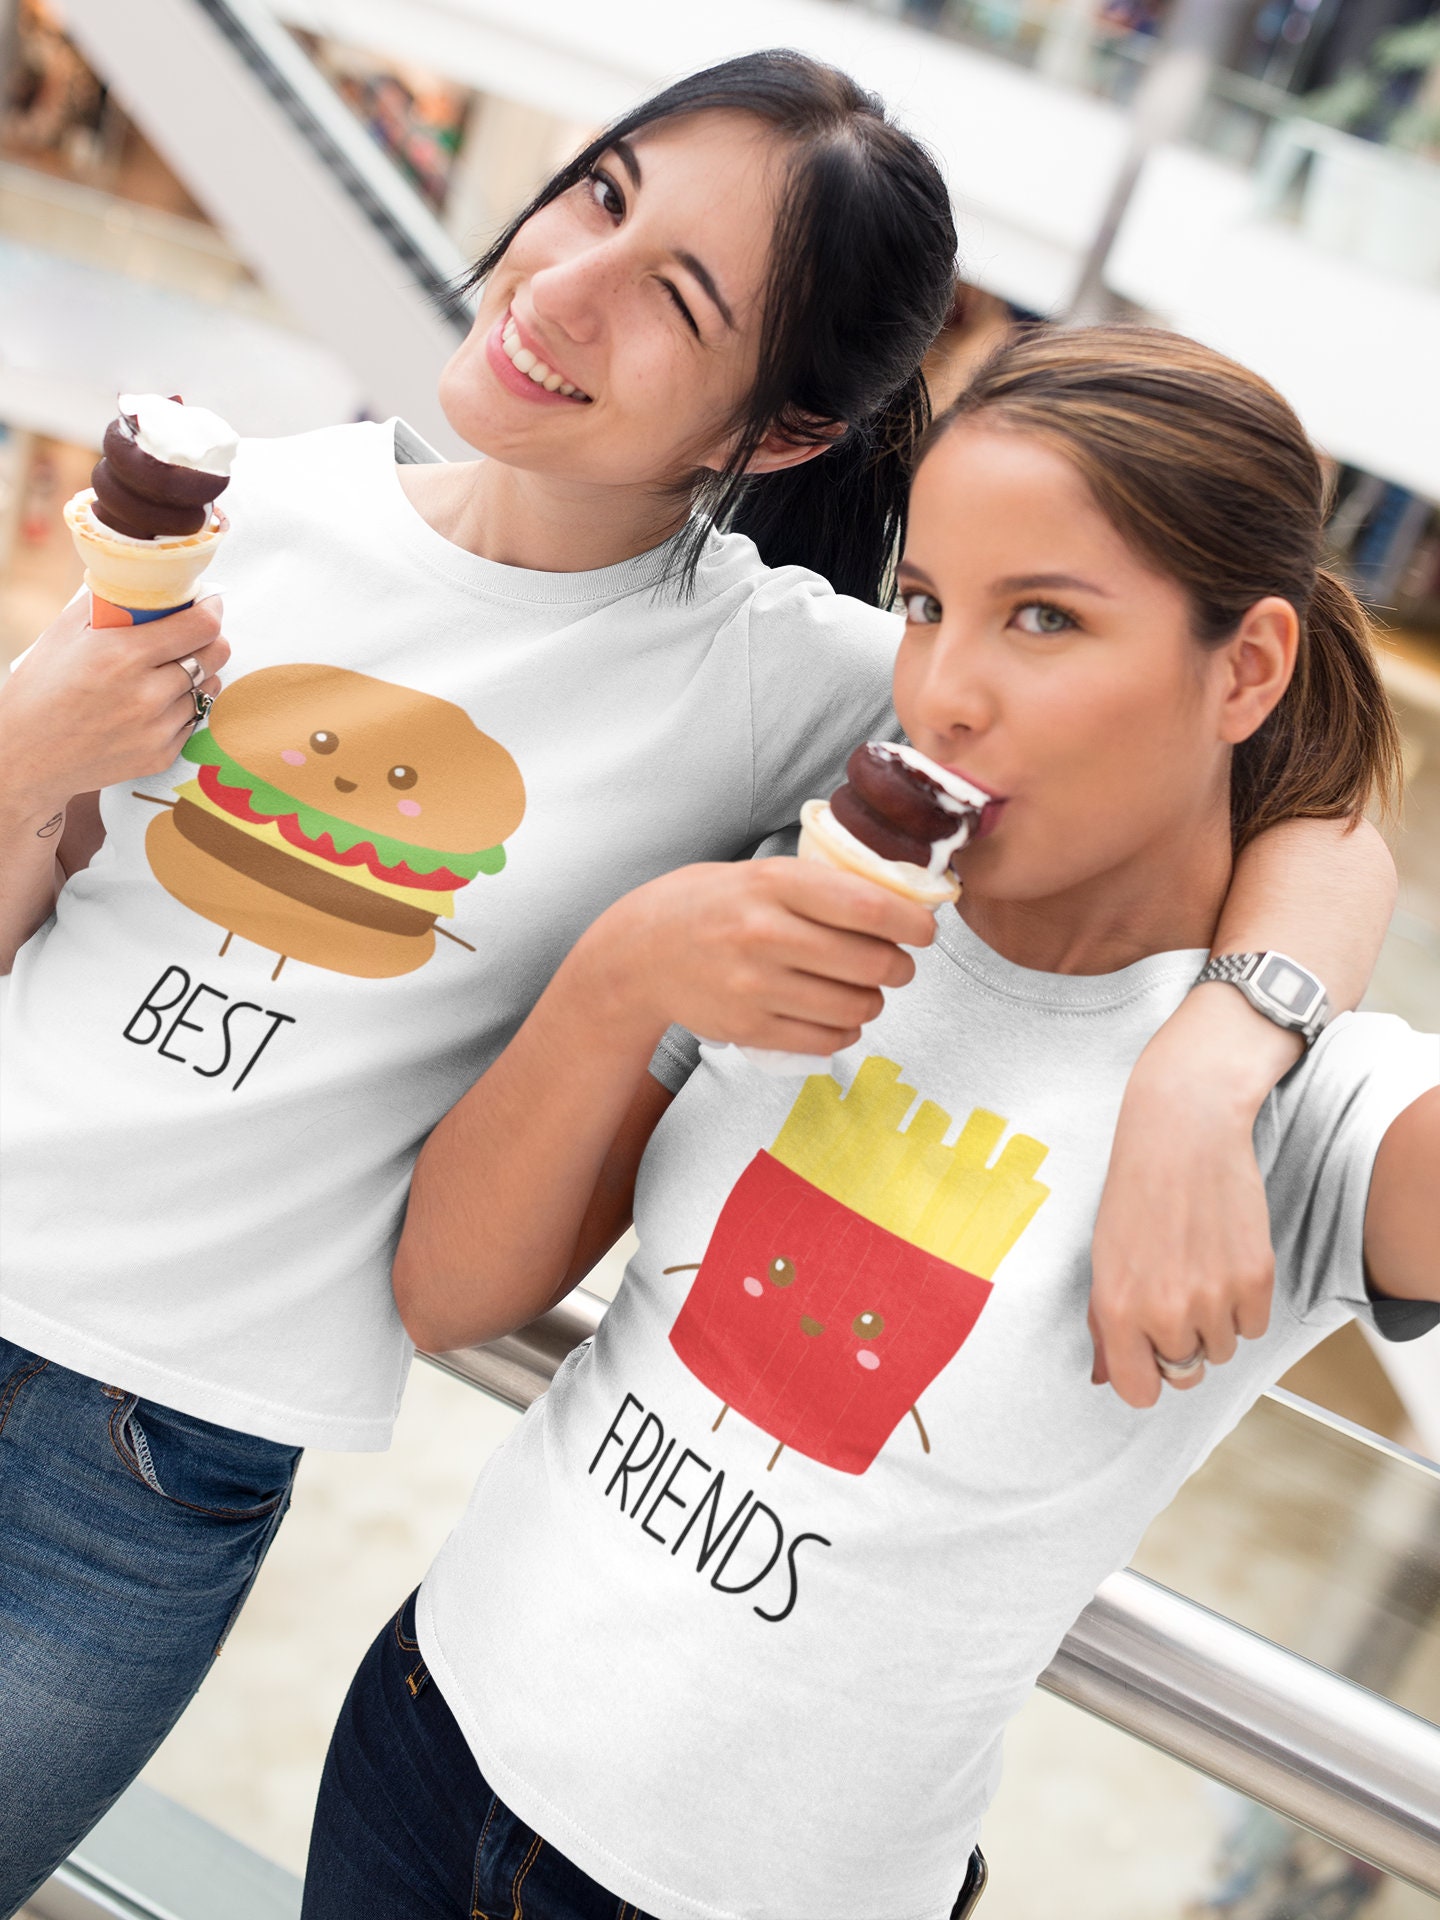 Best Friend T-shirt Burger Fries T-shirt Matching Best - Etsy